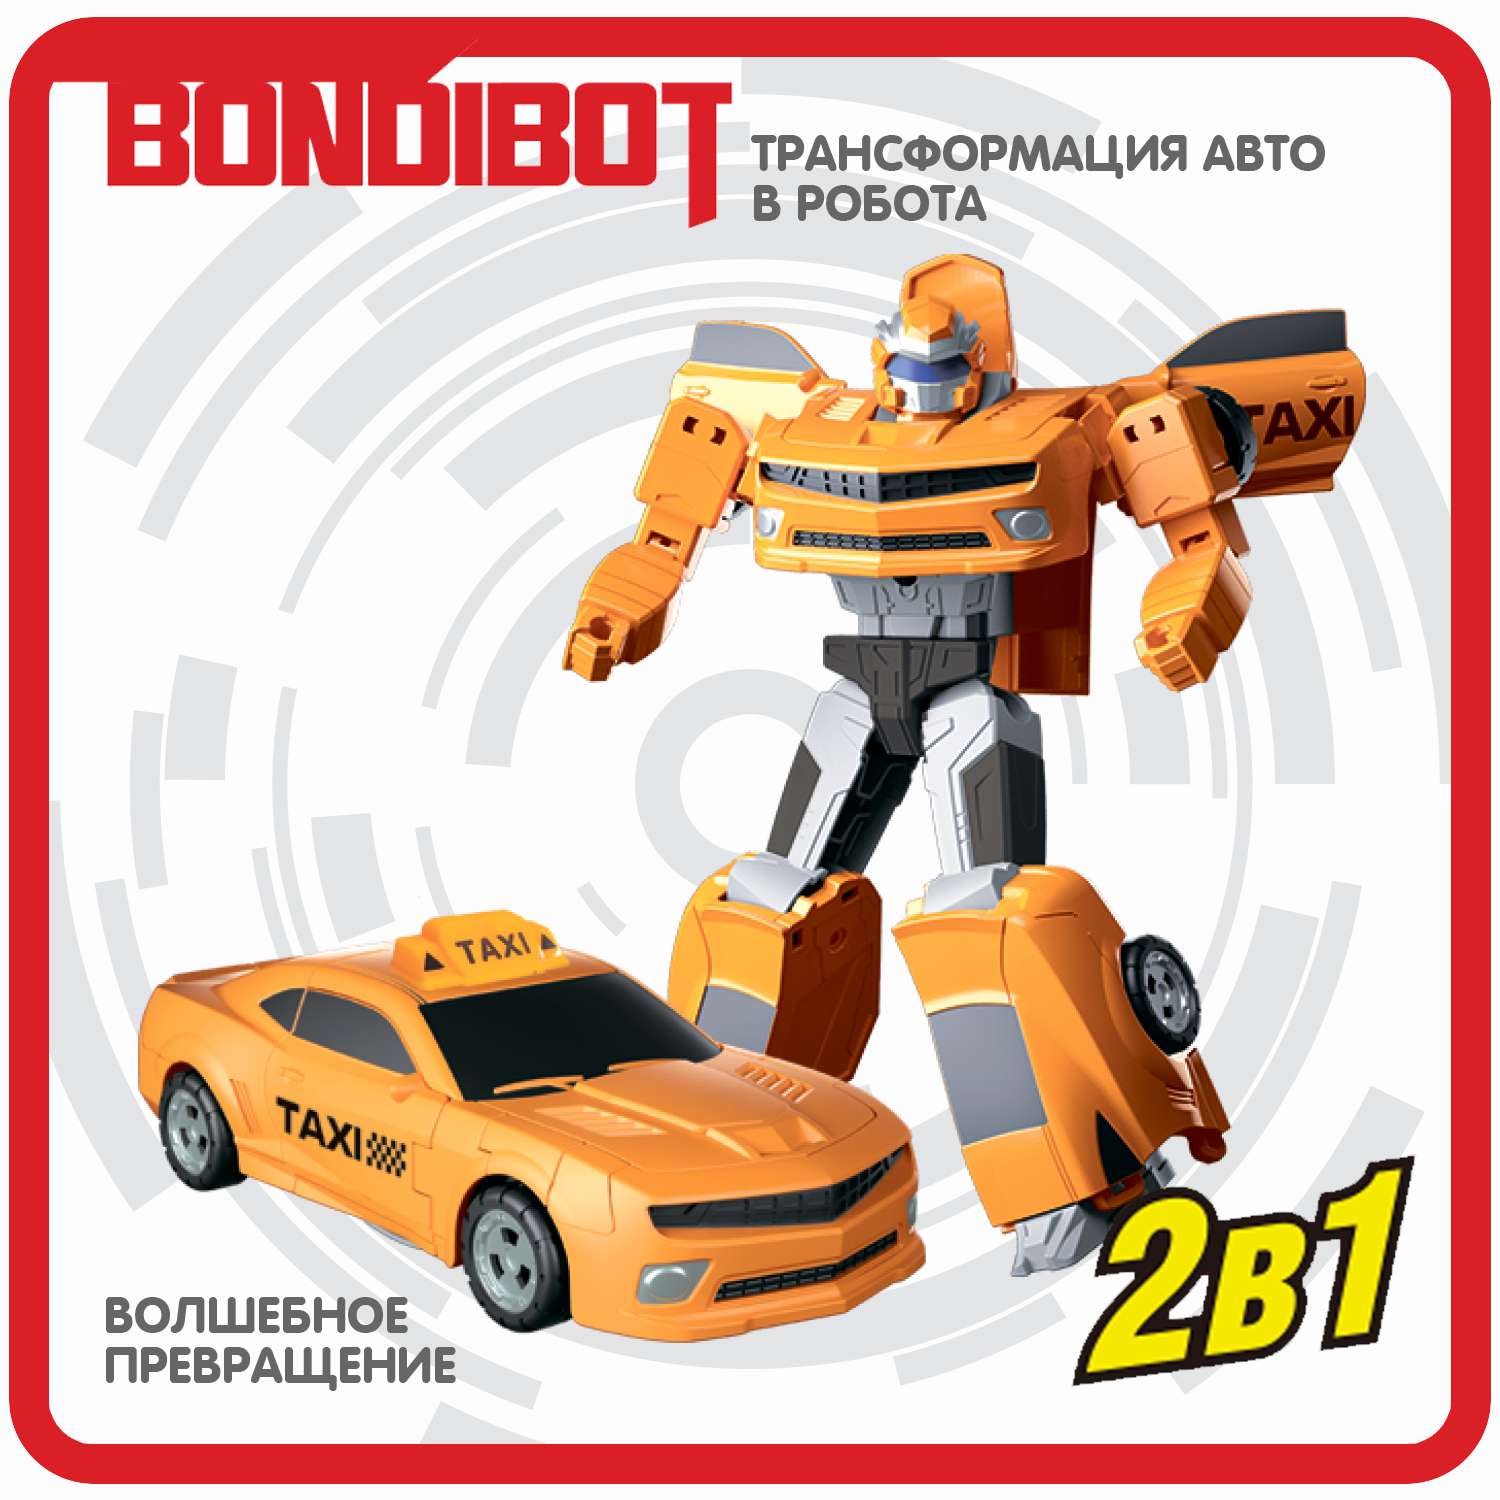 Трансформер BONDIBON Bondibot Робот-автомобиль такси 2 в 1 жёлтого цвета - фото 4